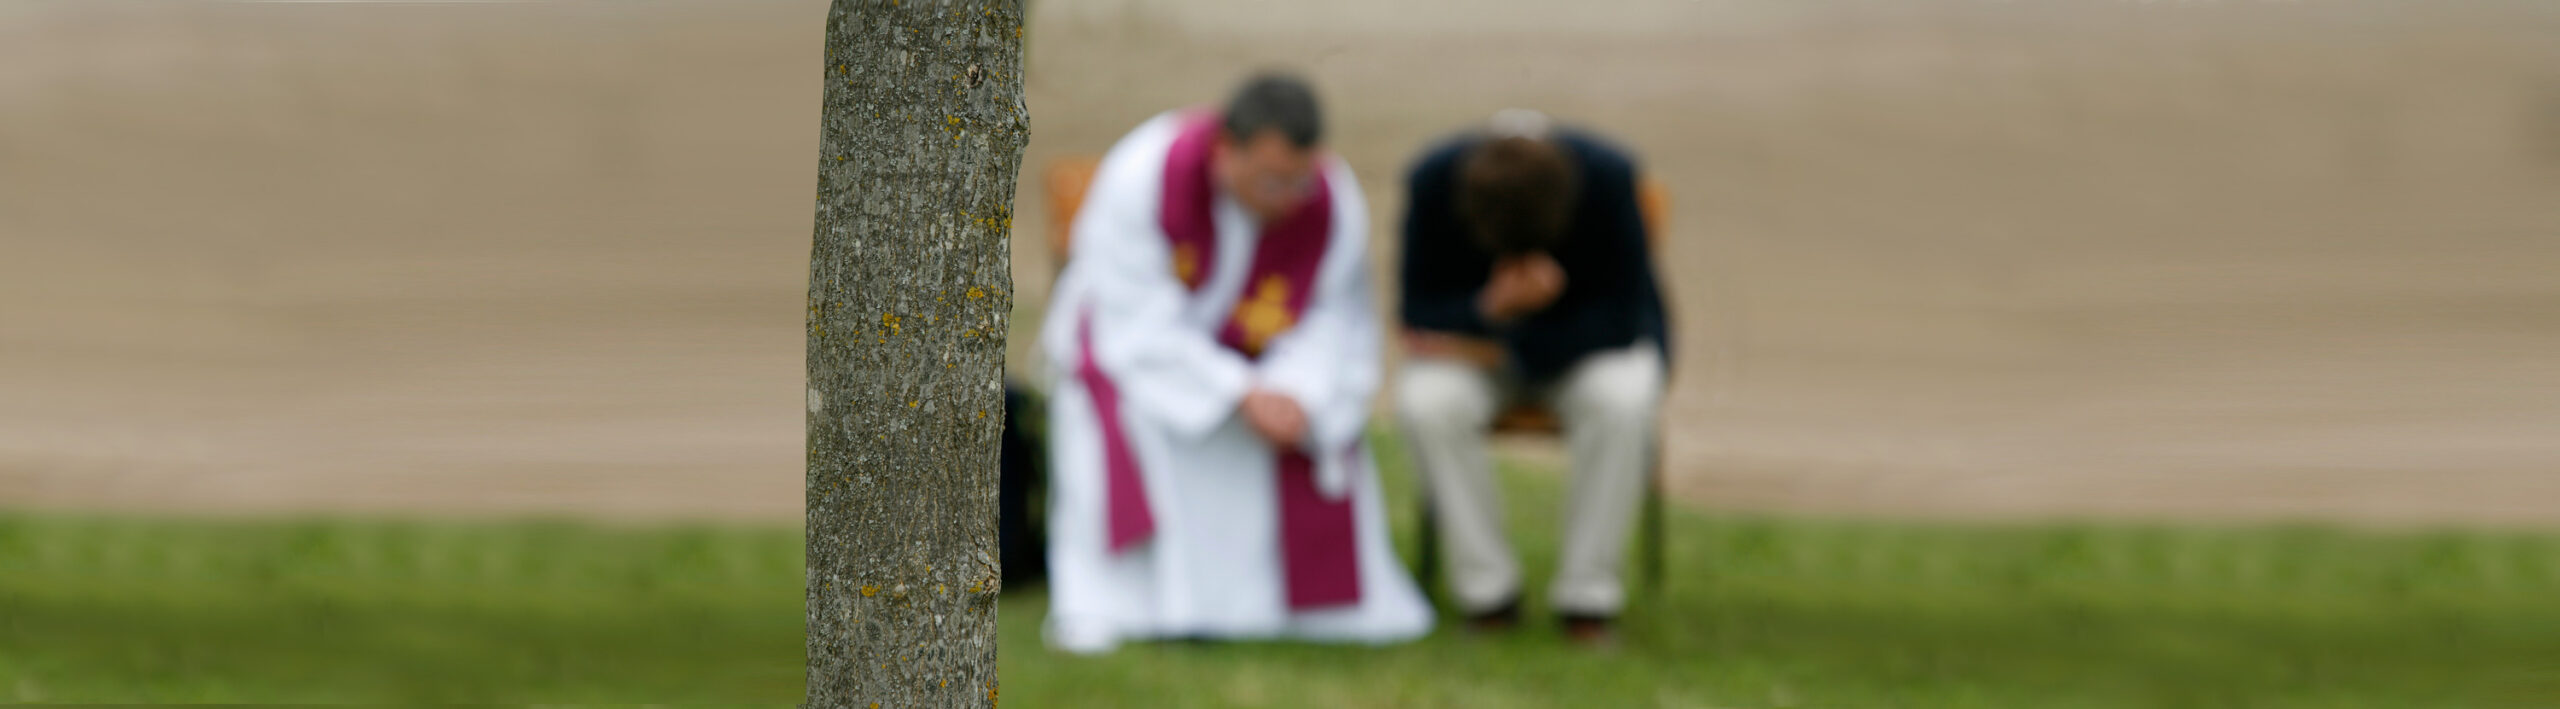 Ein Priester nimmt einem Mann die Beichte ab